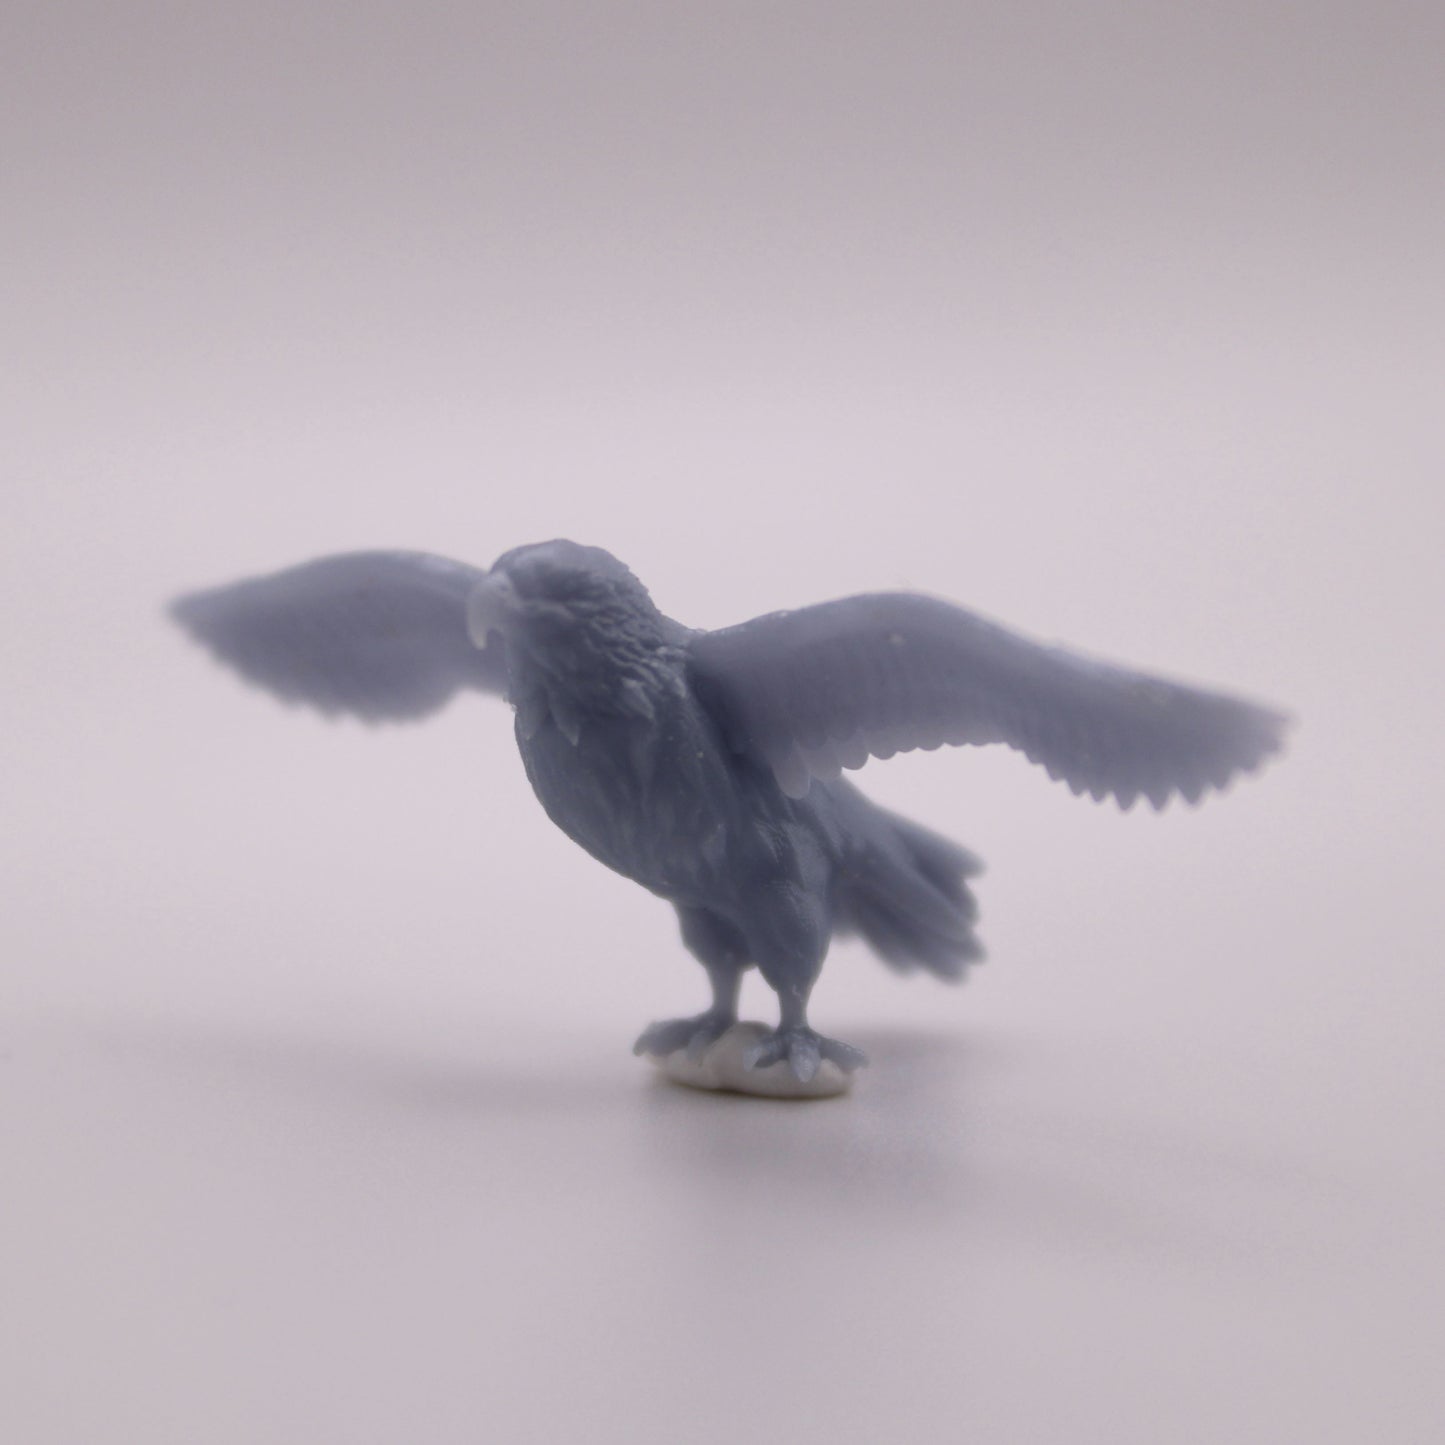 Eagle Miniature